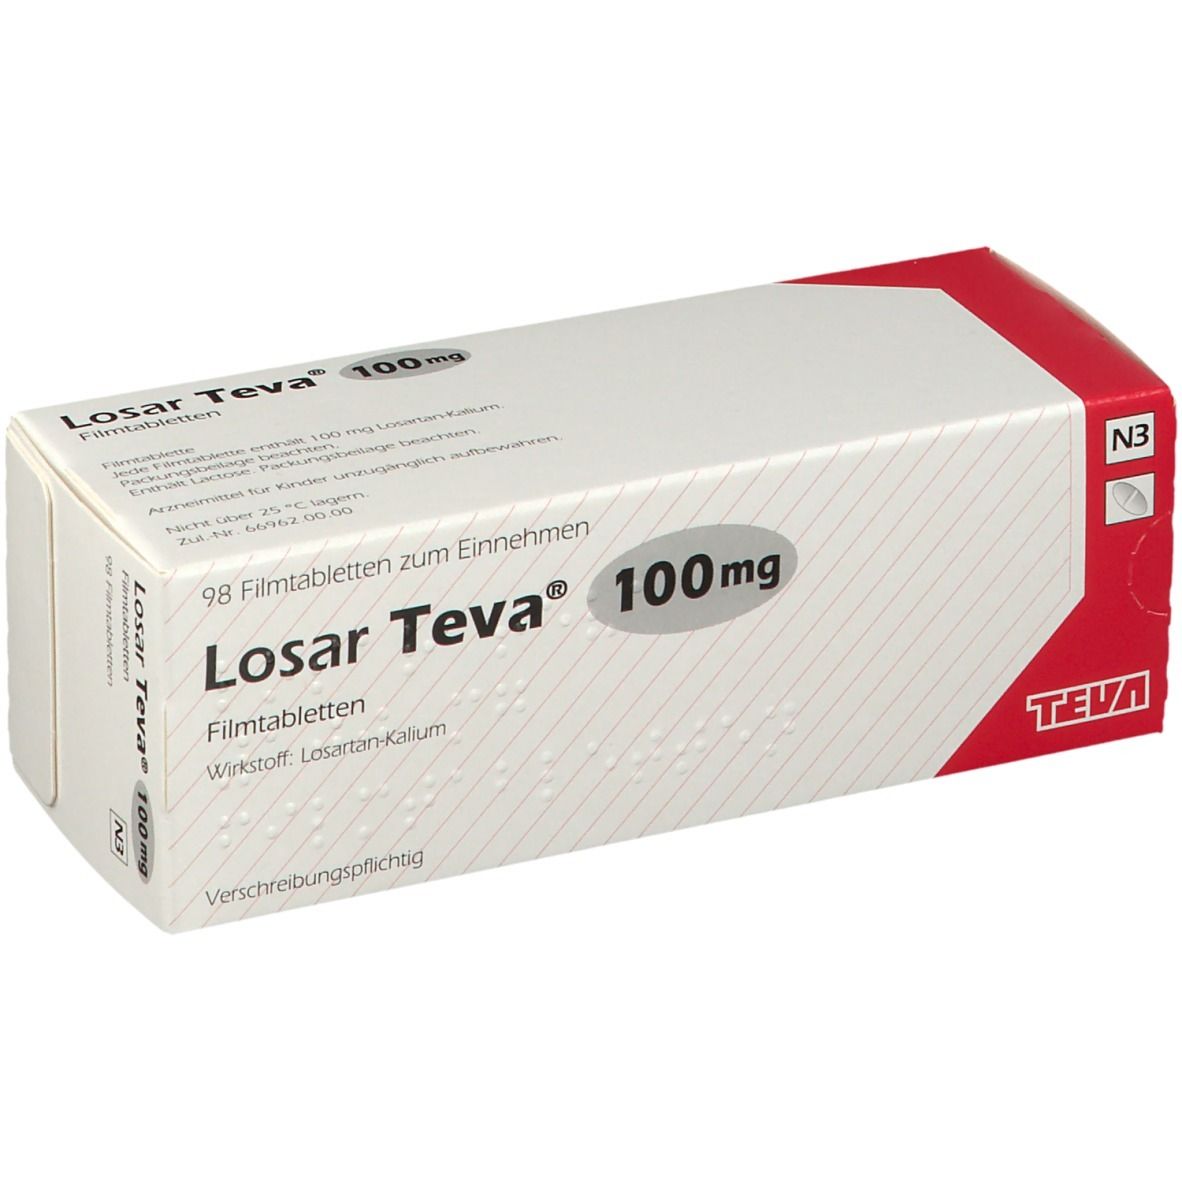 Losar Teva® 100 mg